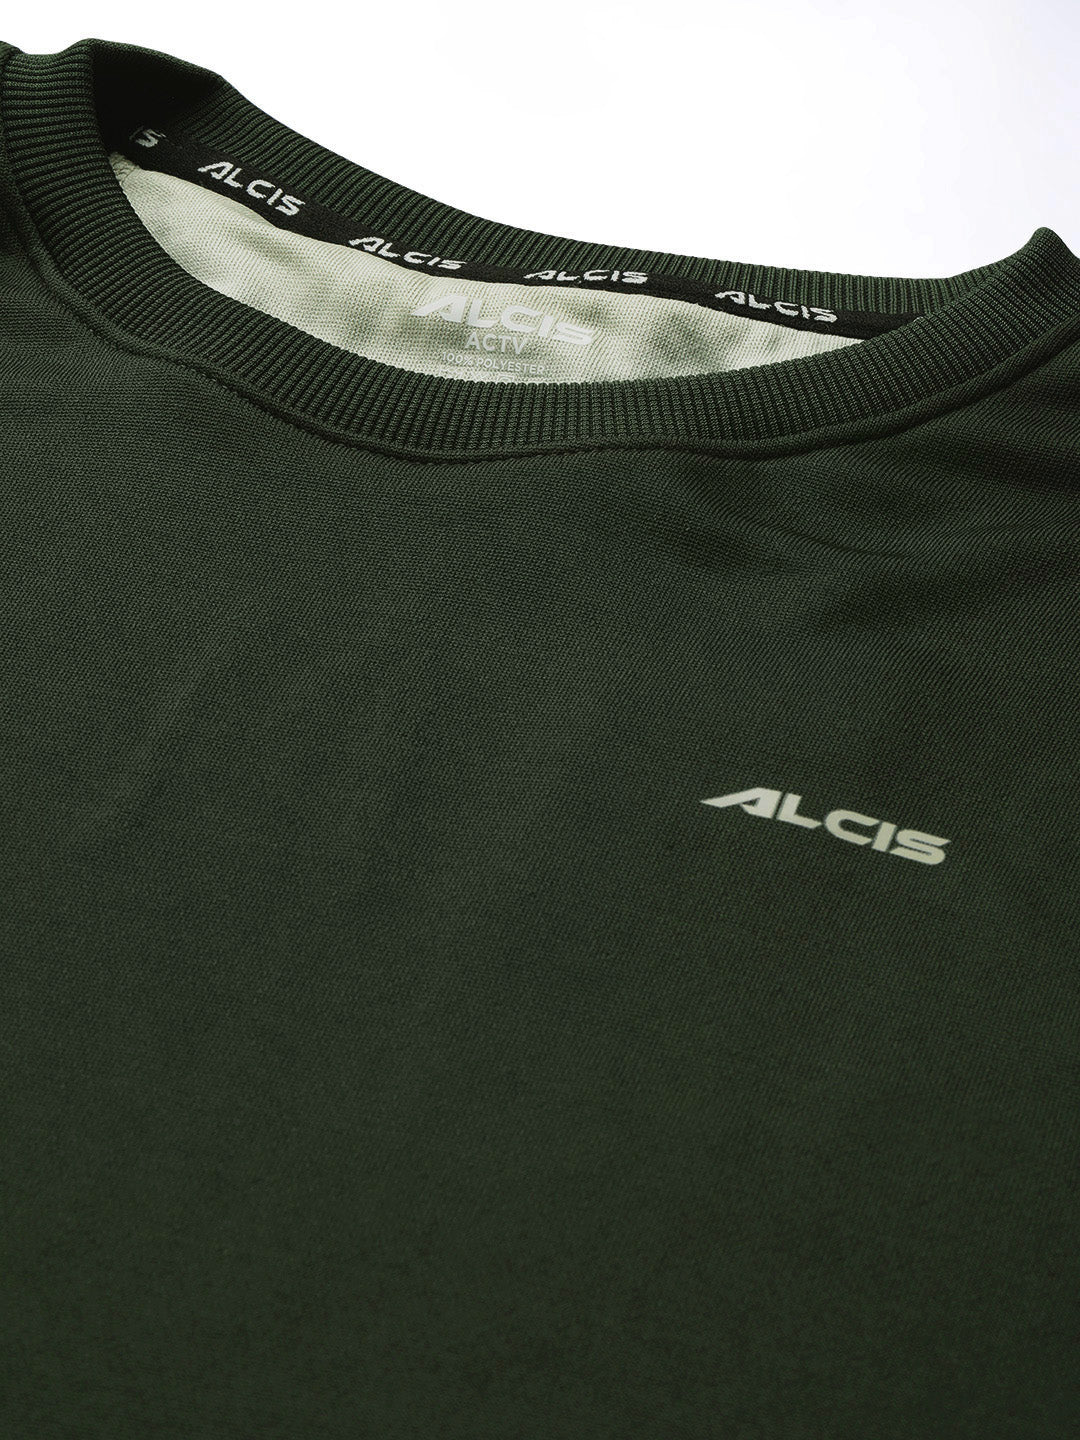 Alcis Men Green Solid Sweatshirt